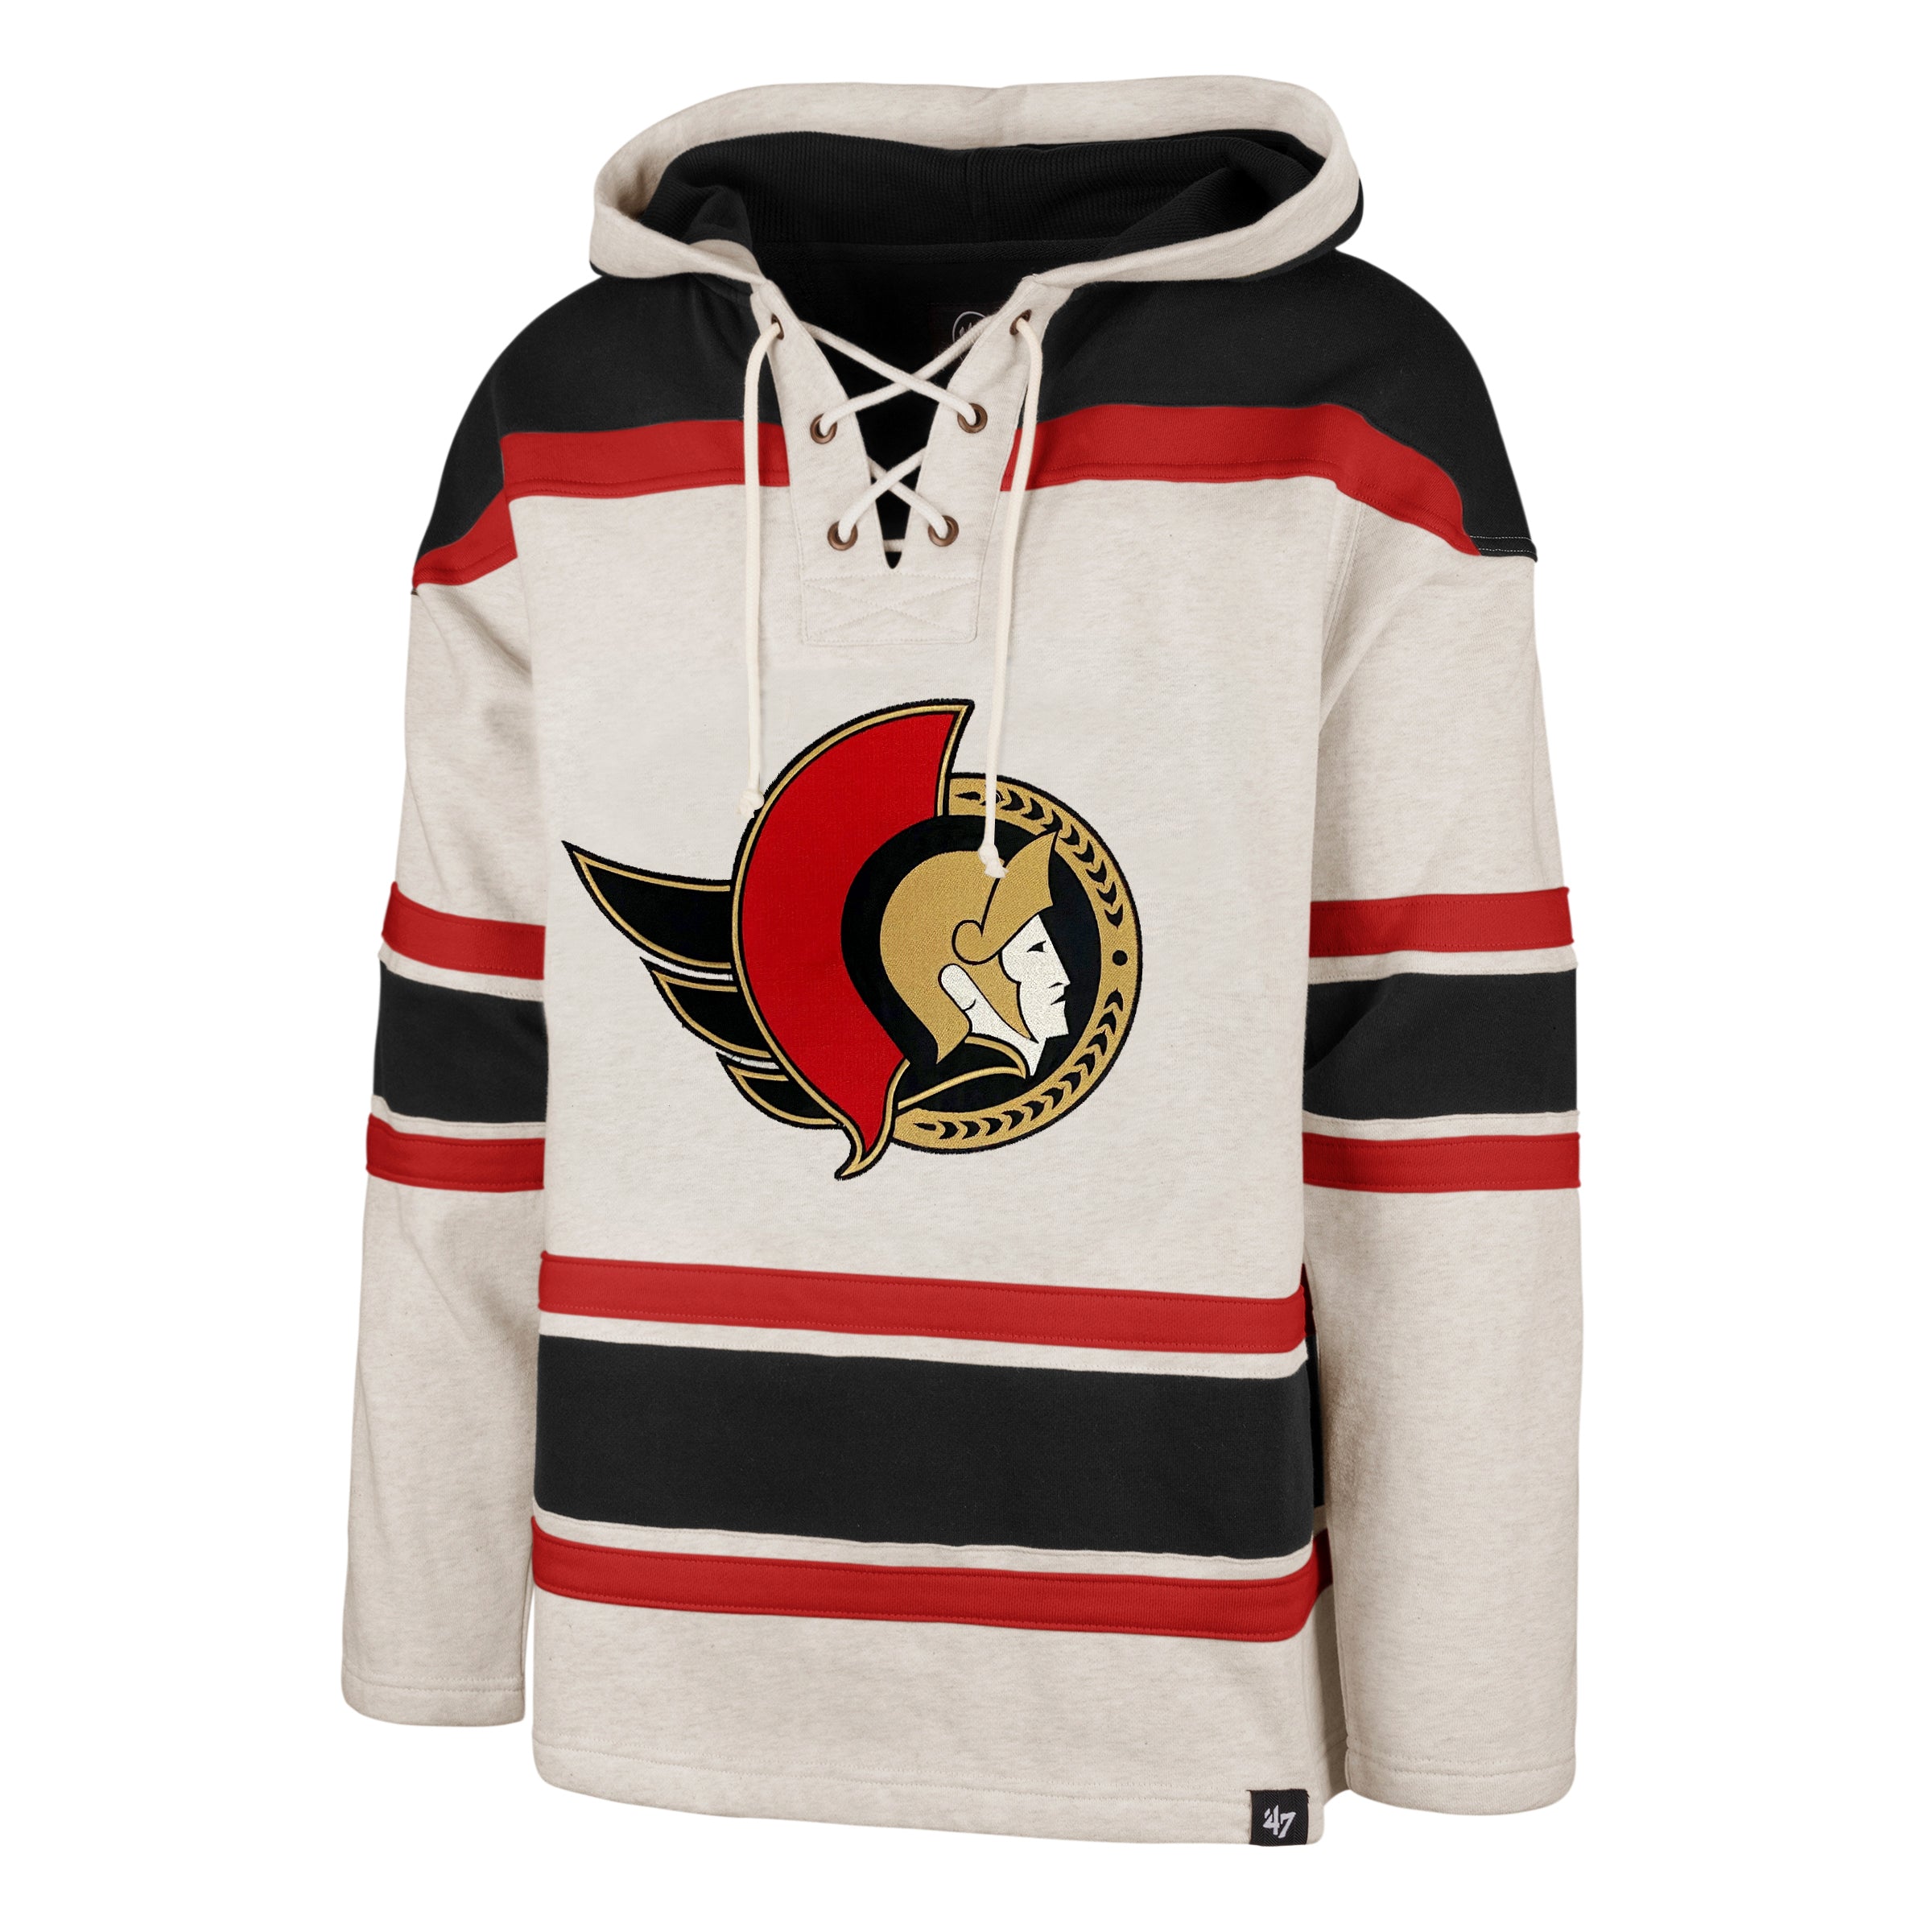 Ottawa Senators sweater  Canadian Museum of History